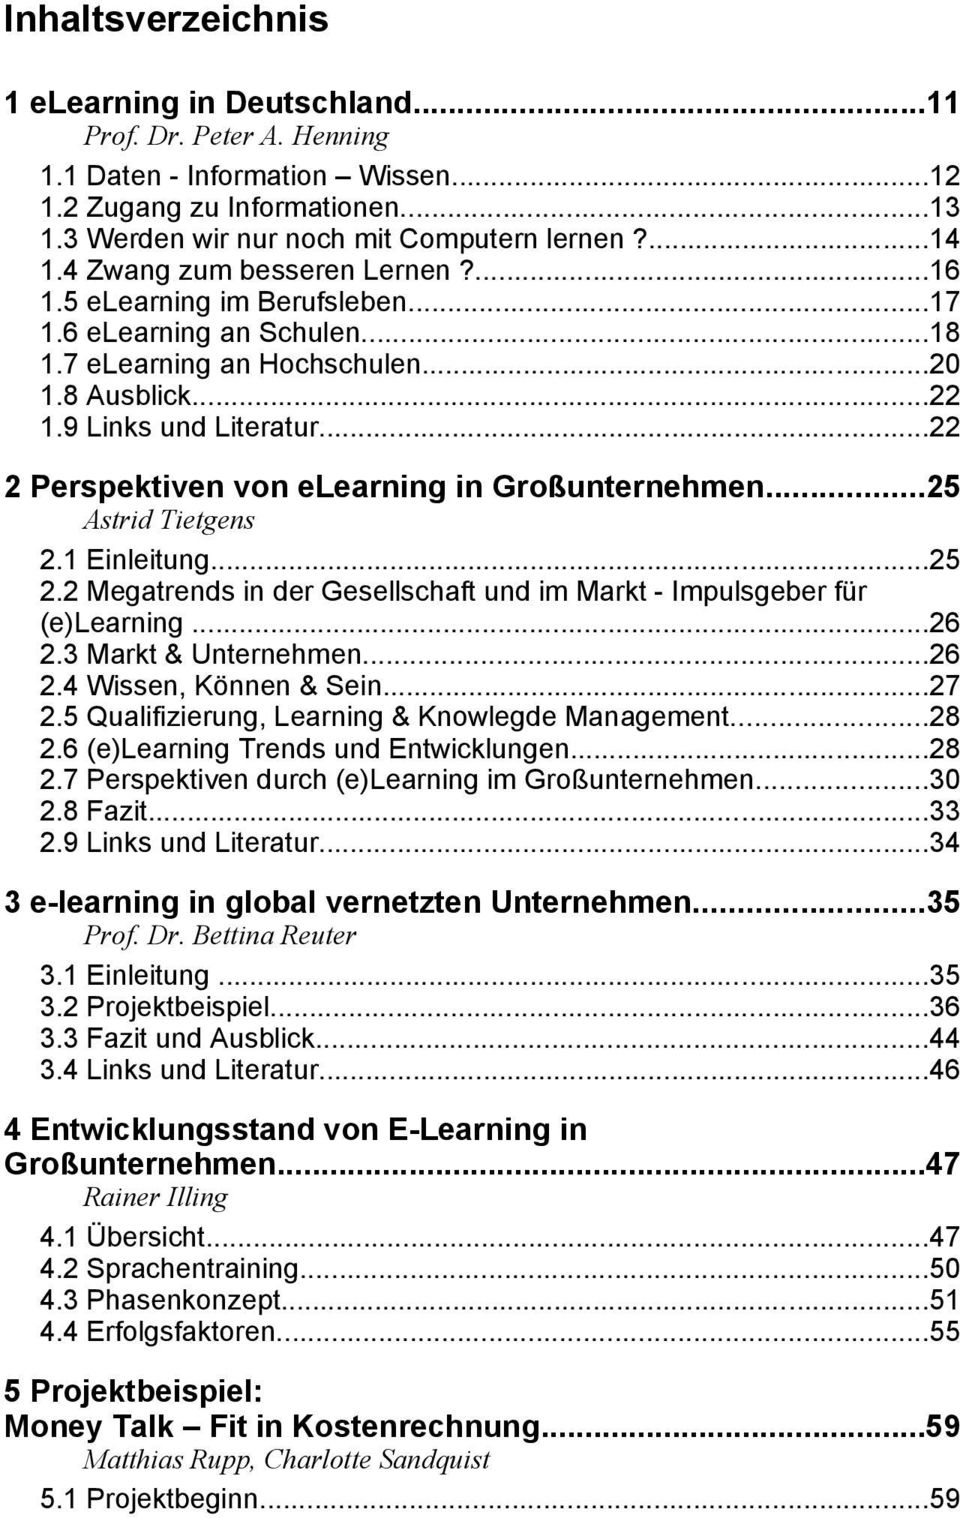 ..22 2 Perspektiven von elearning in Großunternehmen...25 Astrid Tietgens 2.1 Einleitung...25 2.2 Megatrends in der Gesellschaft und im Markt - Impulsgeber für (e)learning...26 2.